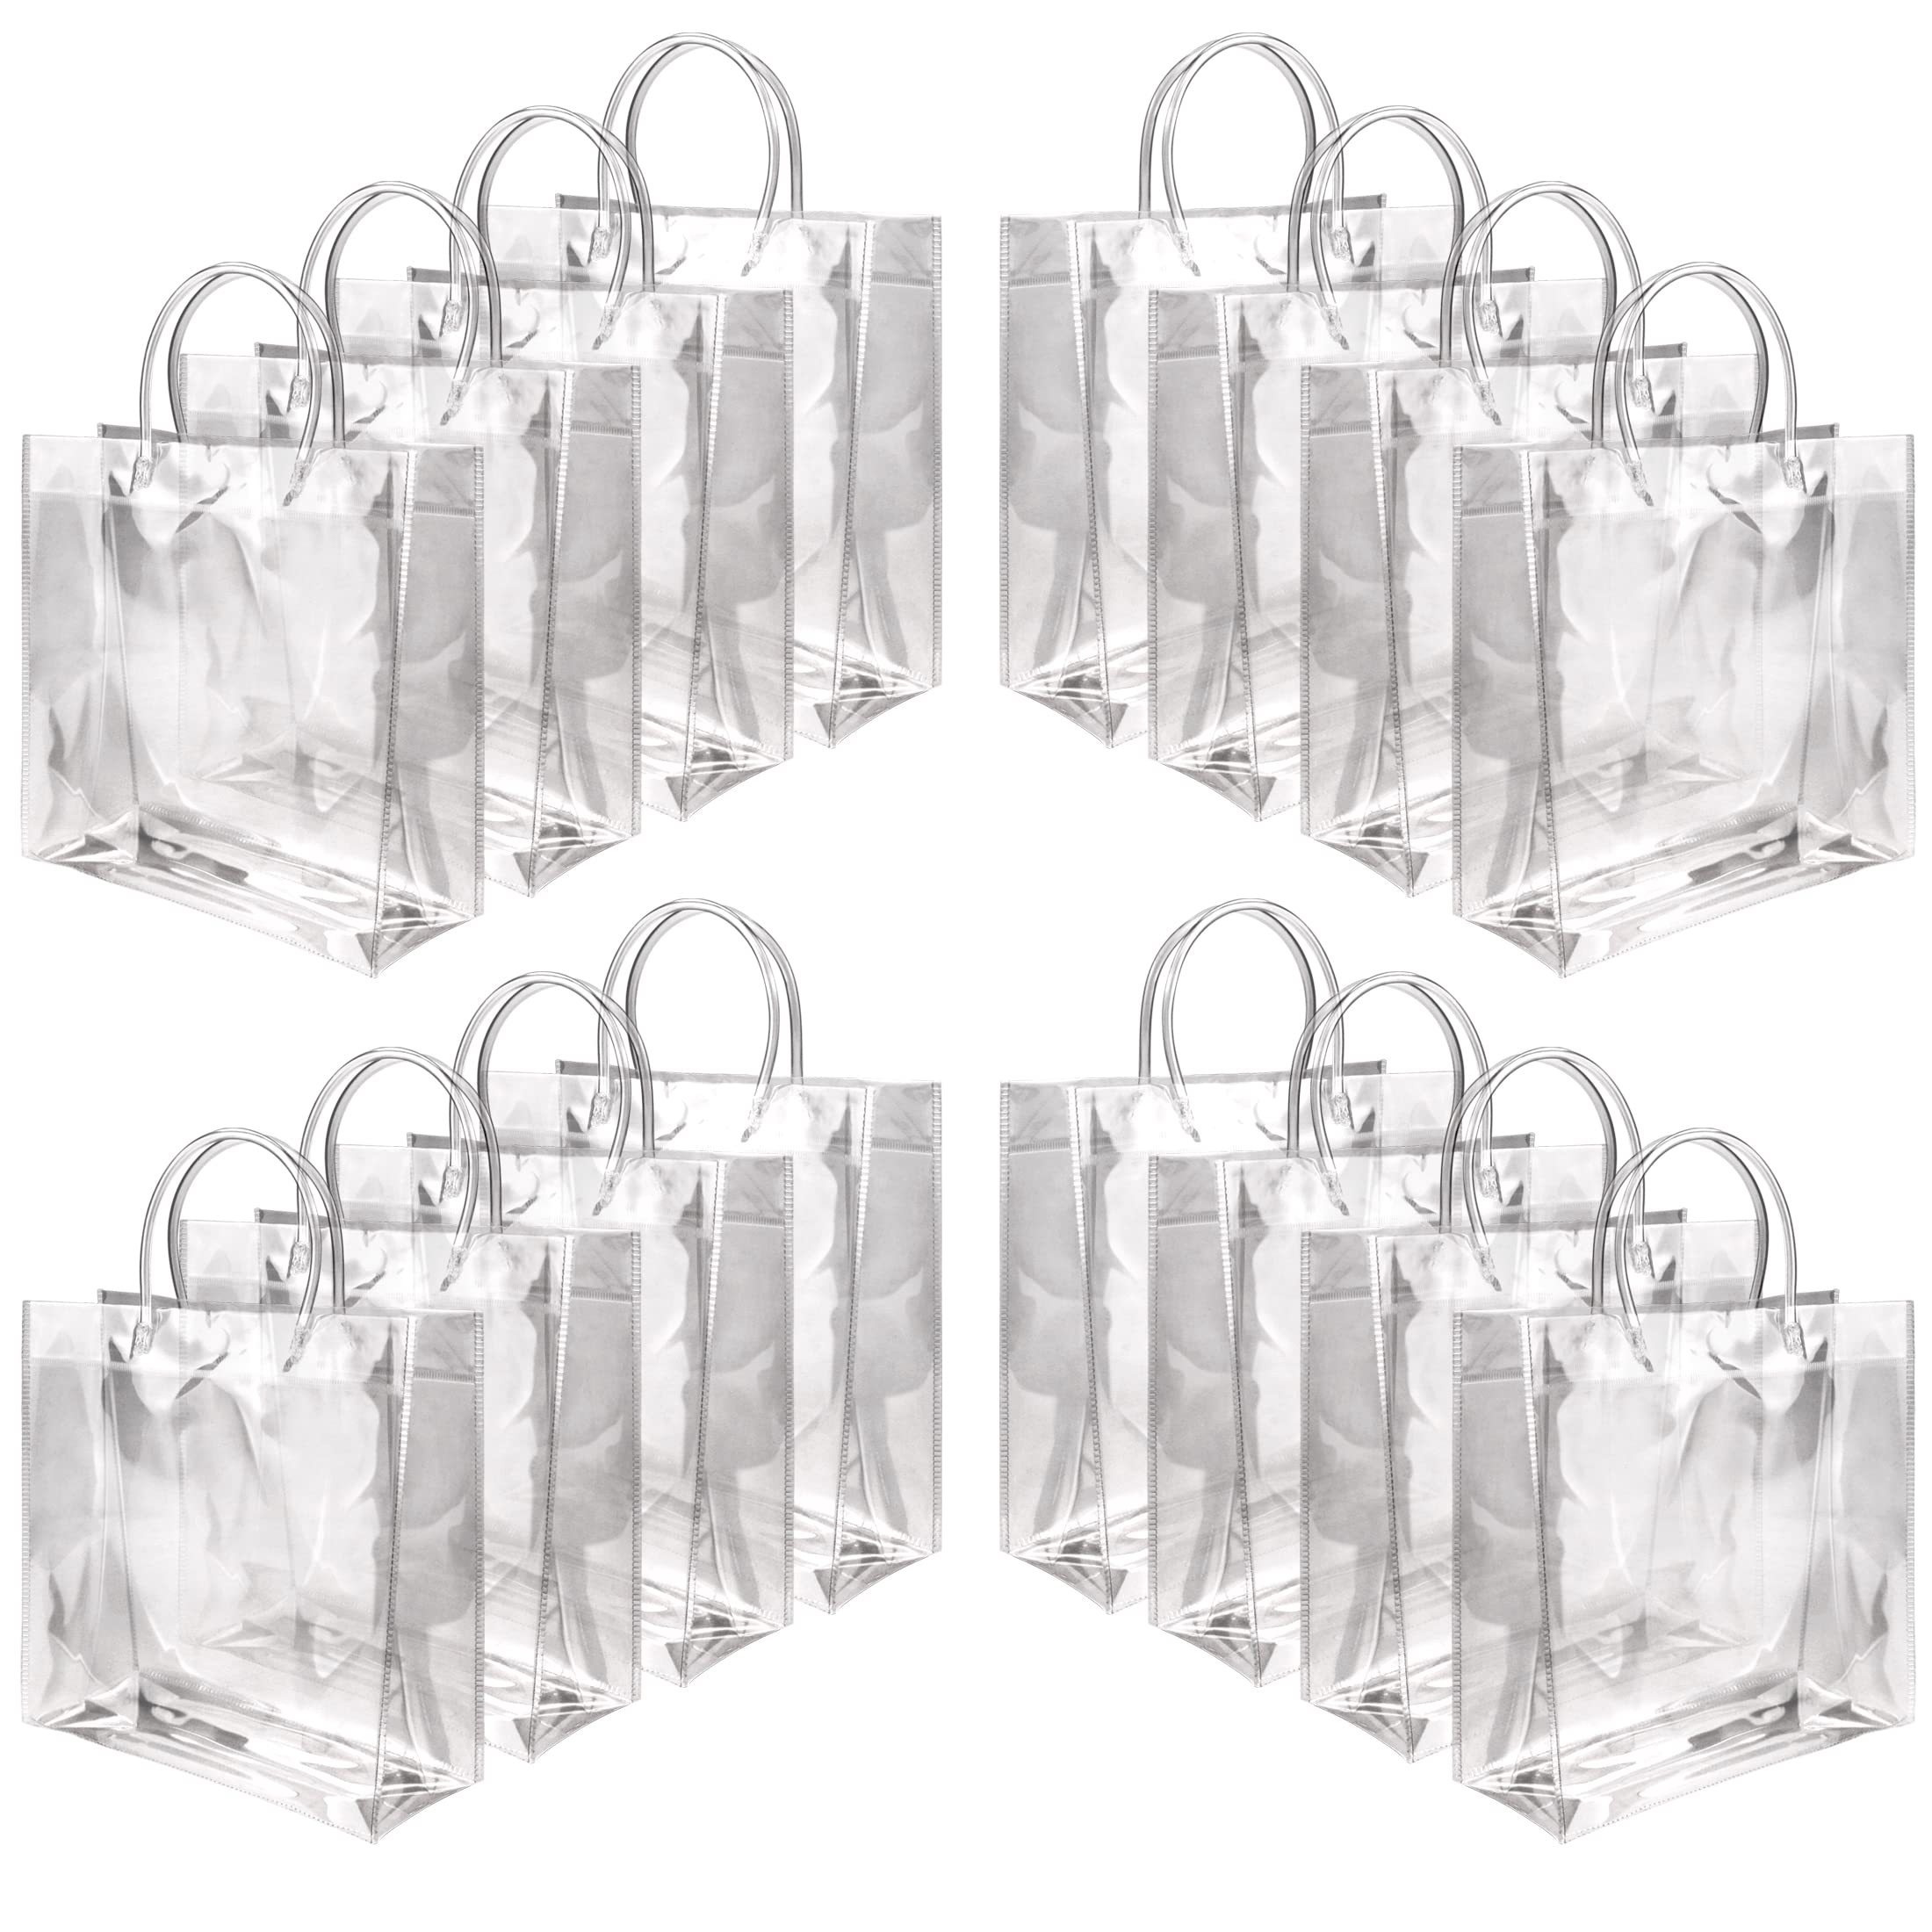 30 bolsas de regalo de PVC transparente con asas, bolsas de regalo  transparentes de plástico reutilizables, bolsas de regalo para Navidad,  boda